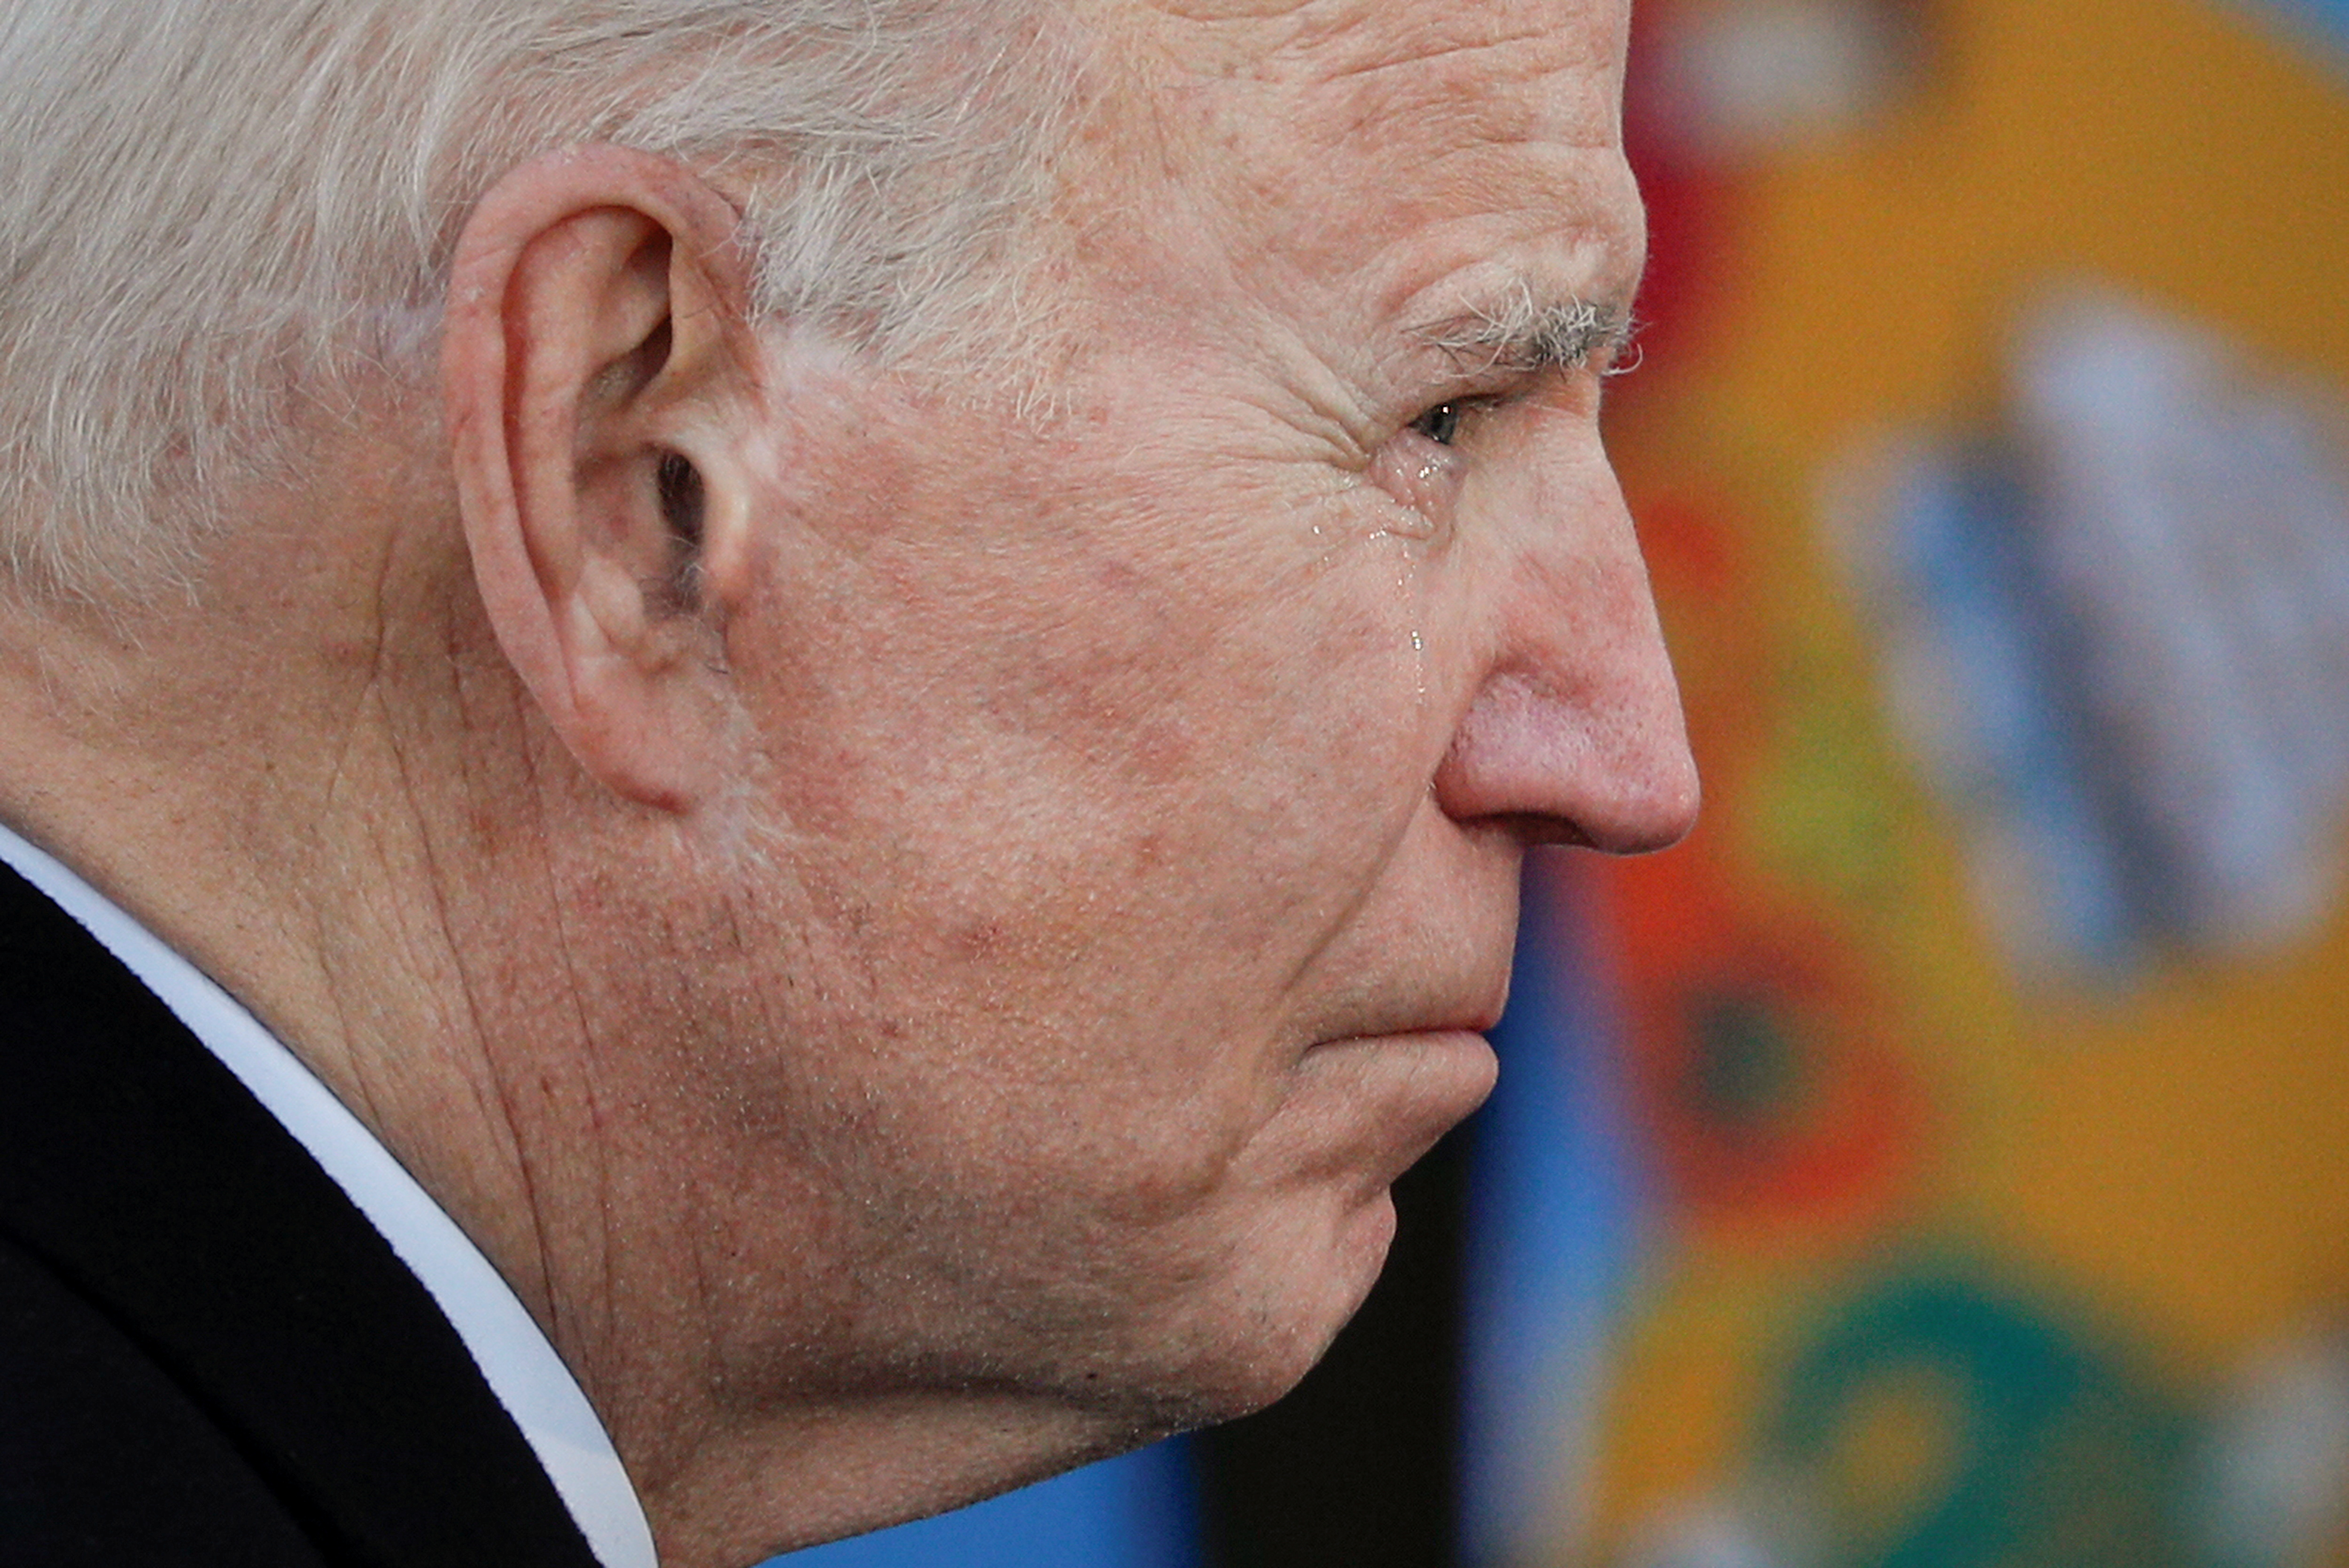 Biden asume —expresó su jefe de gabinete— en el medio de “cuatro crisis que se superponen y se agravan: la crisis de COVID-19, la crisis económica resultante, la crisis del clima y una crisis de igualdad racial”. (REUTERS/Tom Brenner)